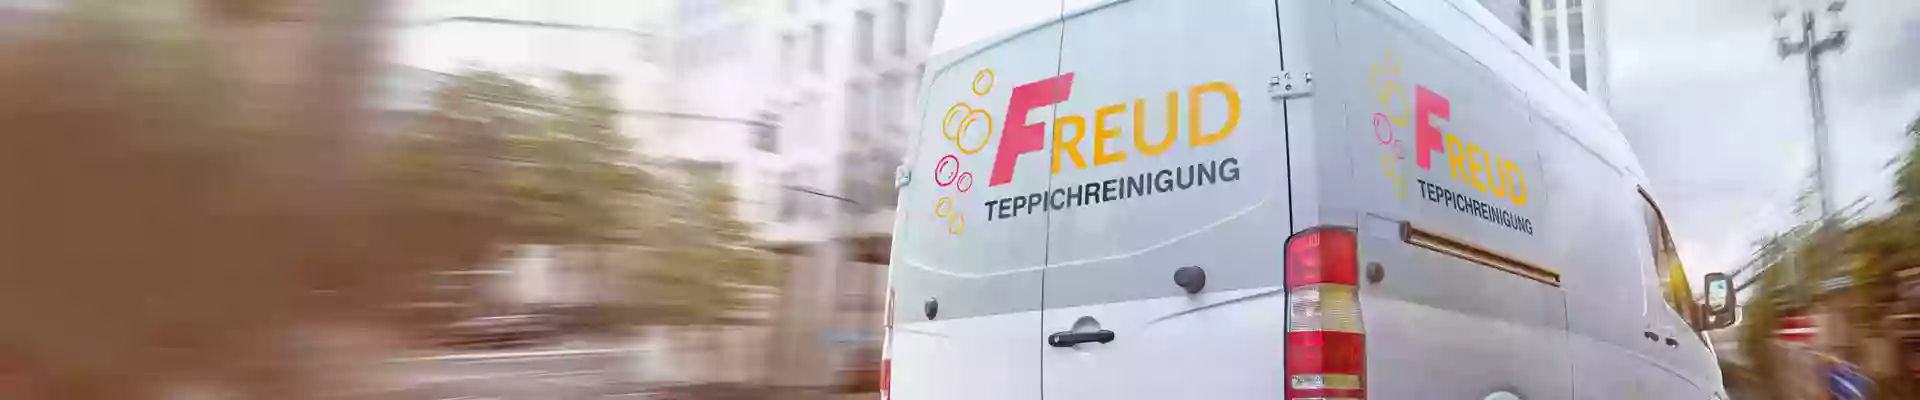 Freud Teppichreinigung GmbH